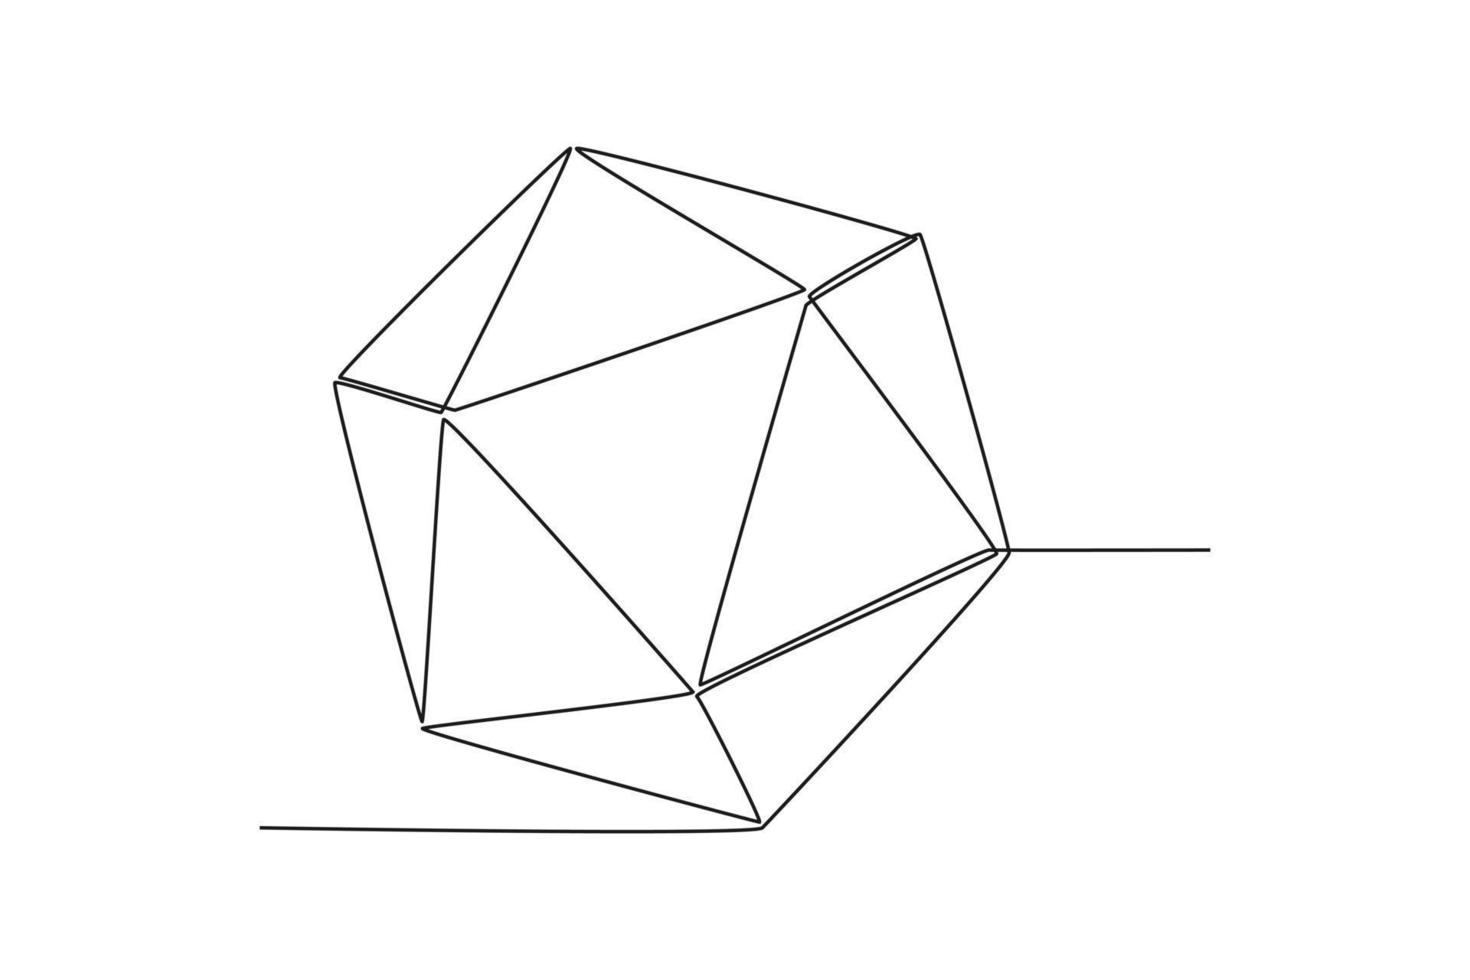 Single einer Linie Zeichnung Diamant. geometrisch Formen Konzept. kontinuierlich Linie zeichnen Design Grafik Vektor Illustration.